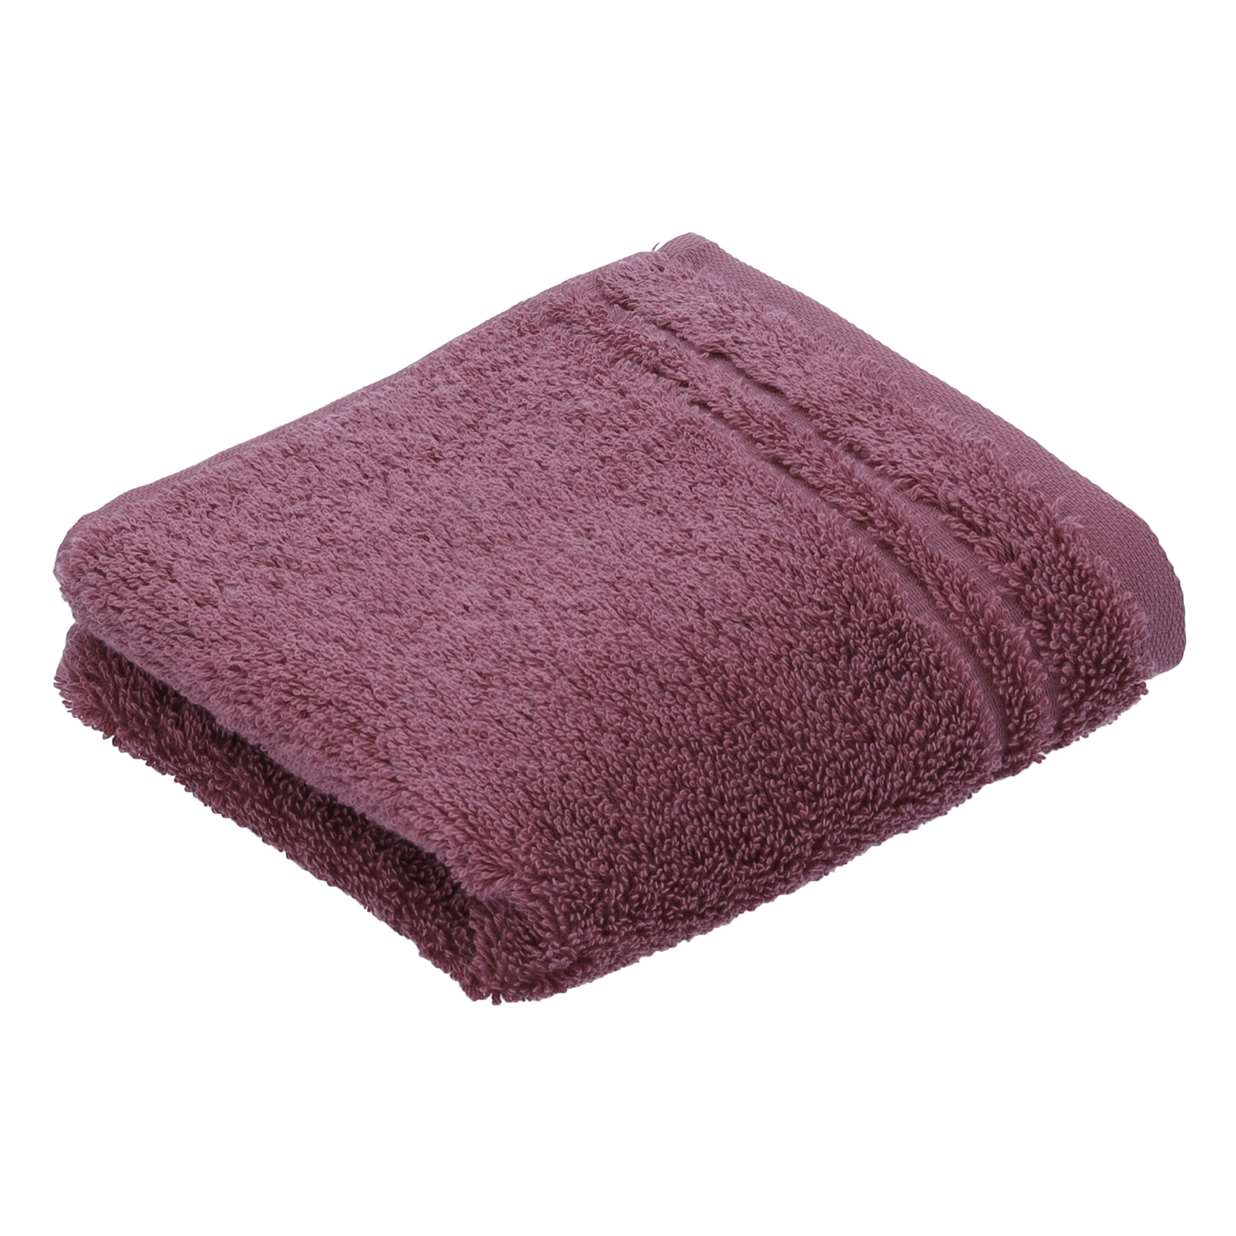 Ręcznik z bawełny organicznej Vienna Style Blackberry